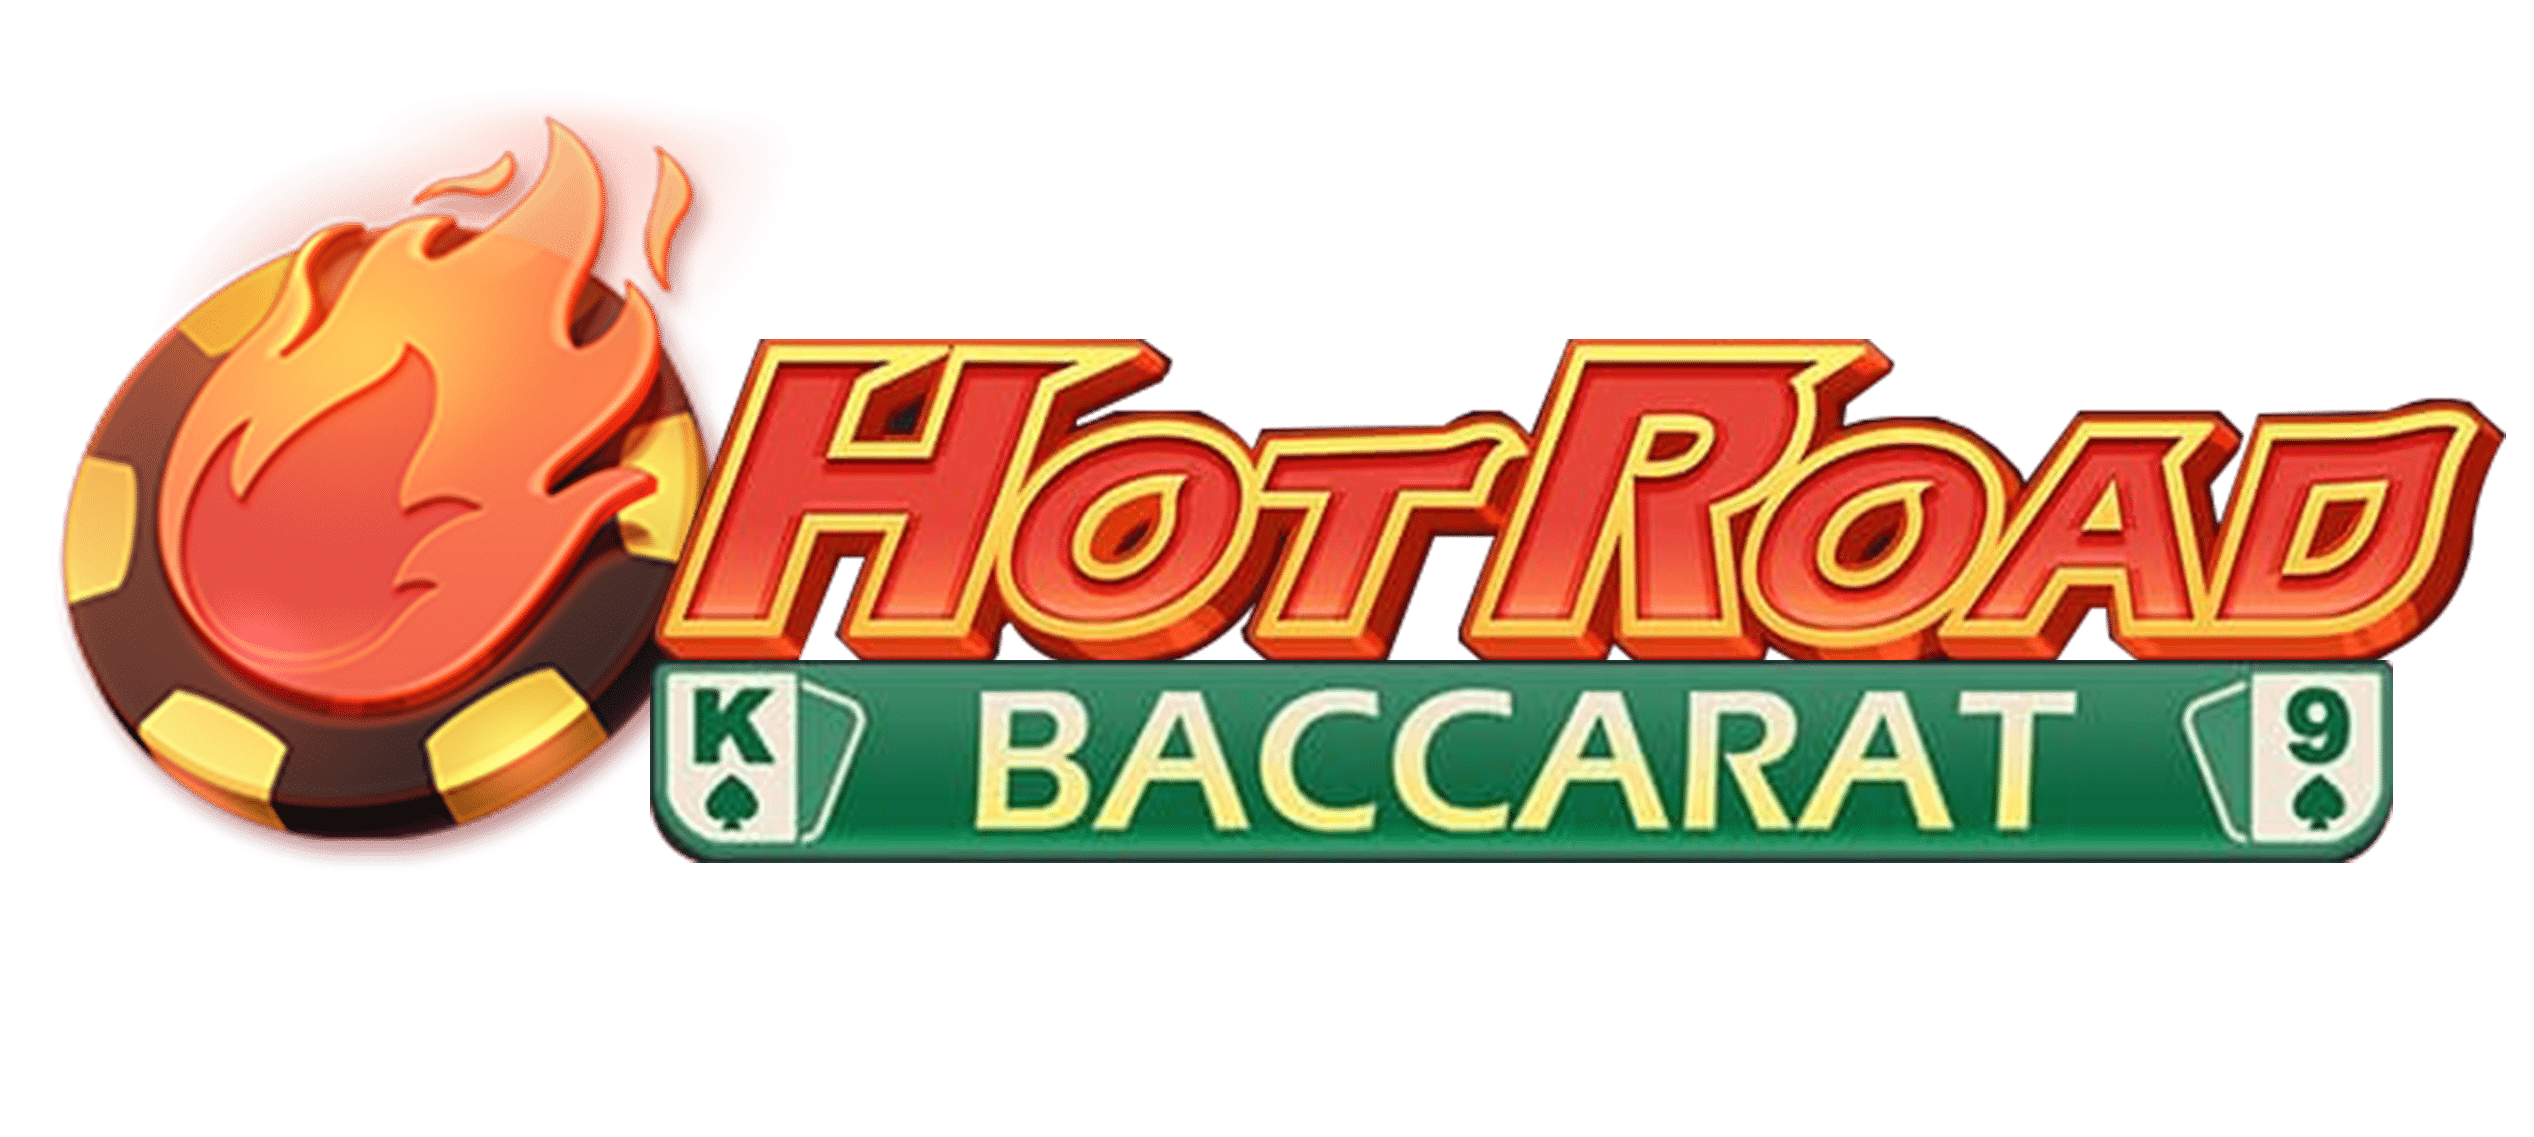 Hotroadbaccaratt(1)